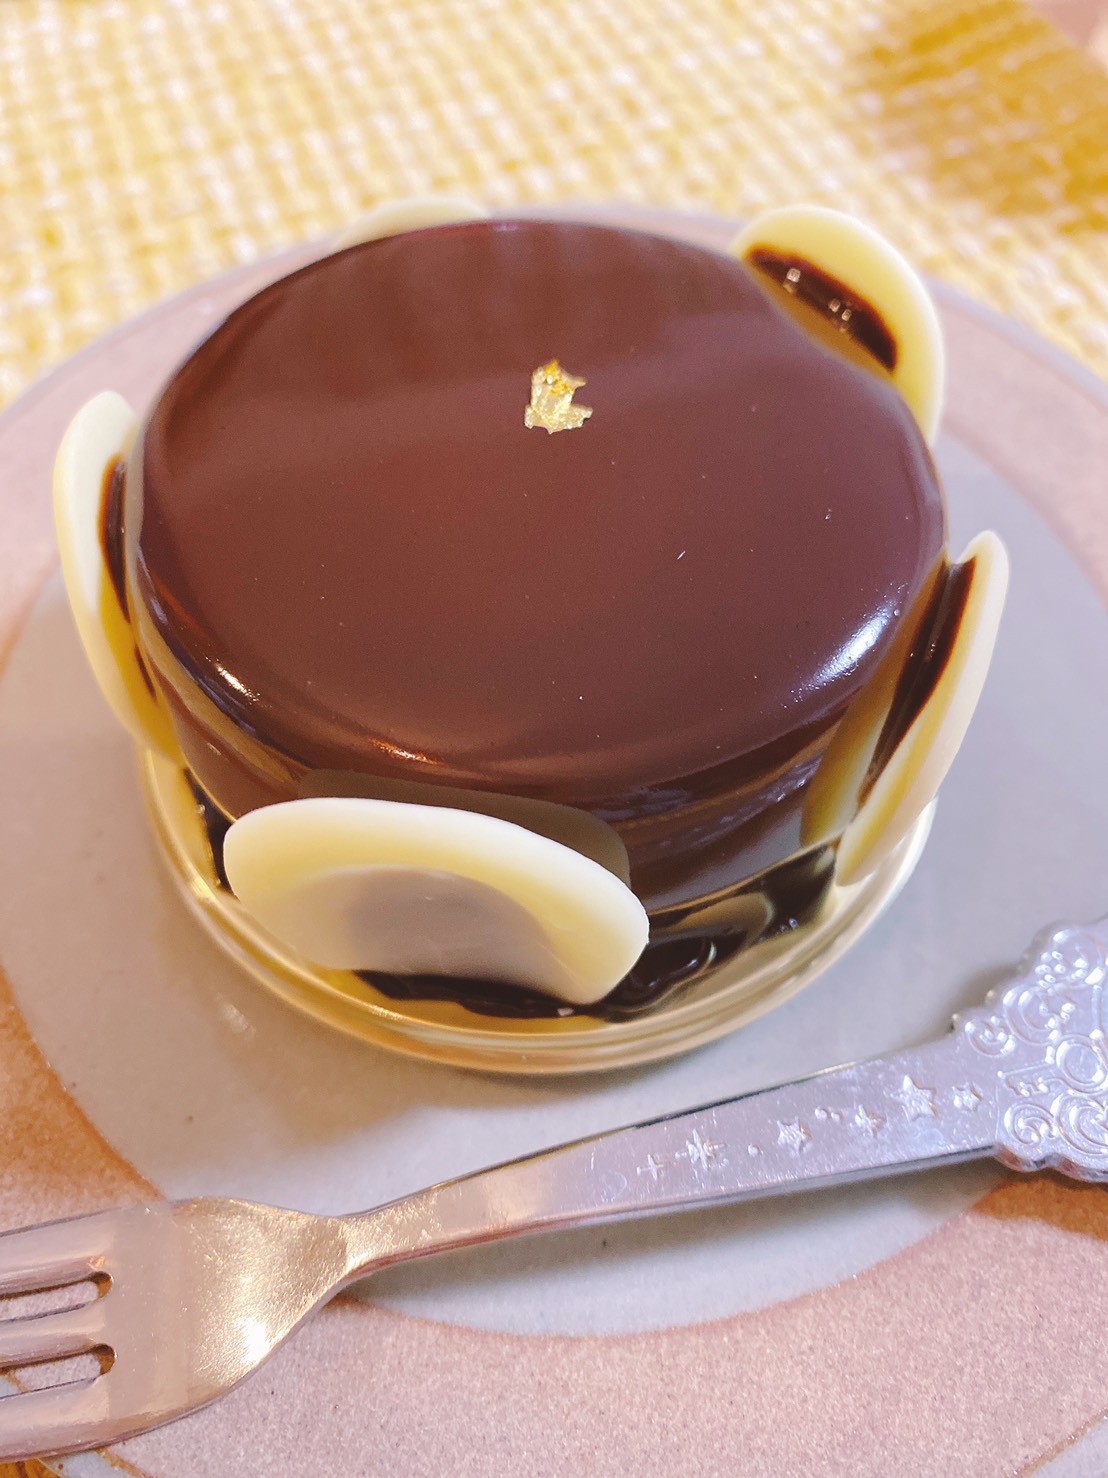 磐田市にある家田ケーキが絶品!生チョコは大人気で即売り切れ!